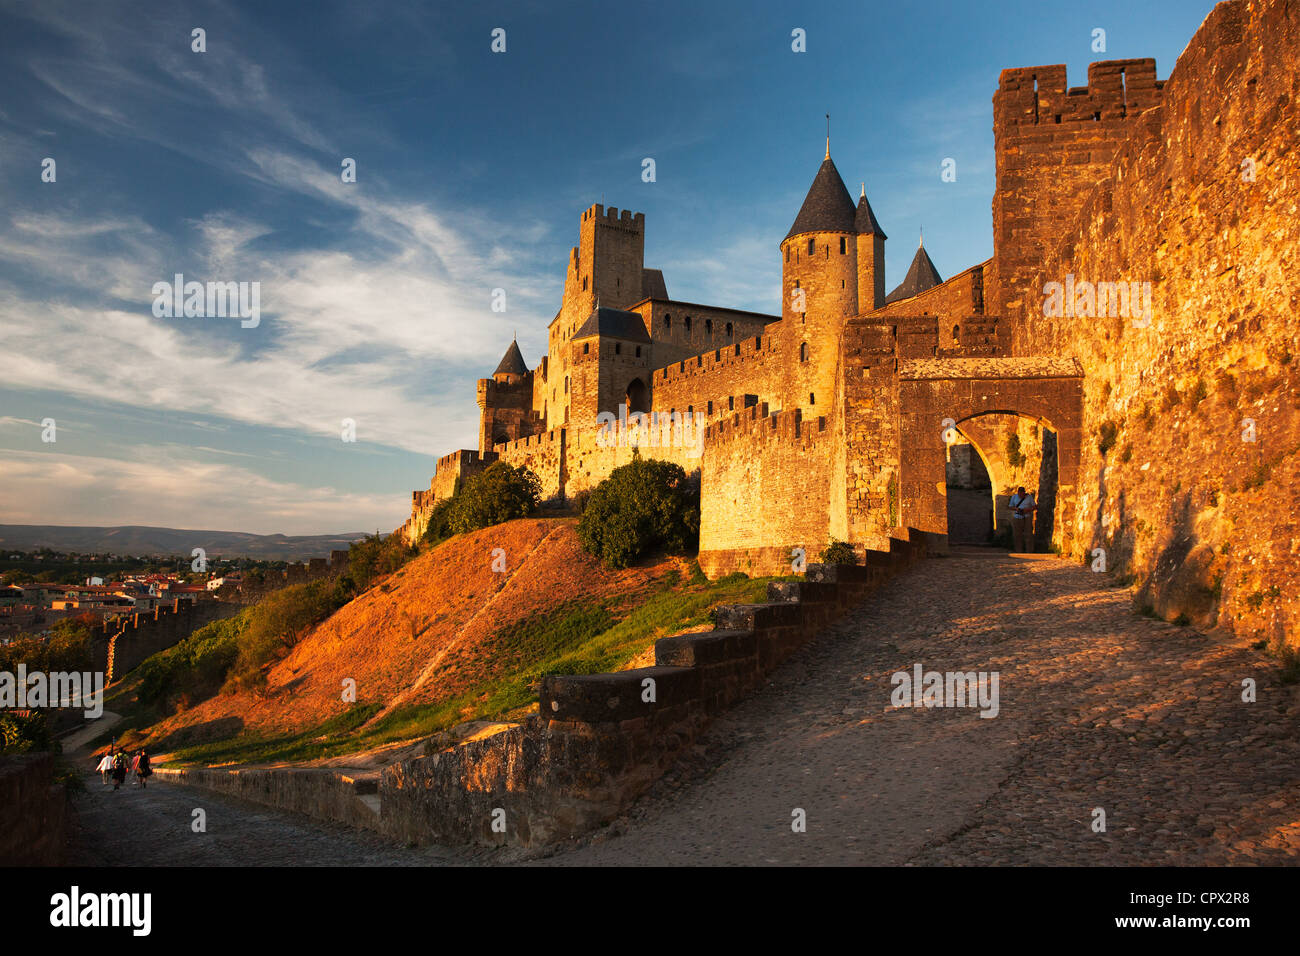 Cité médiévale de Carcassonne, aude, france Banque D'Images